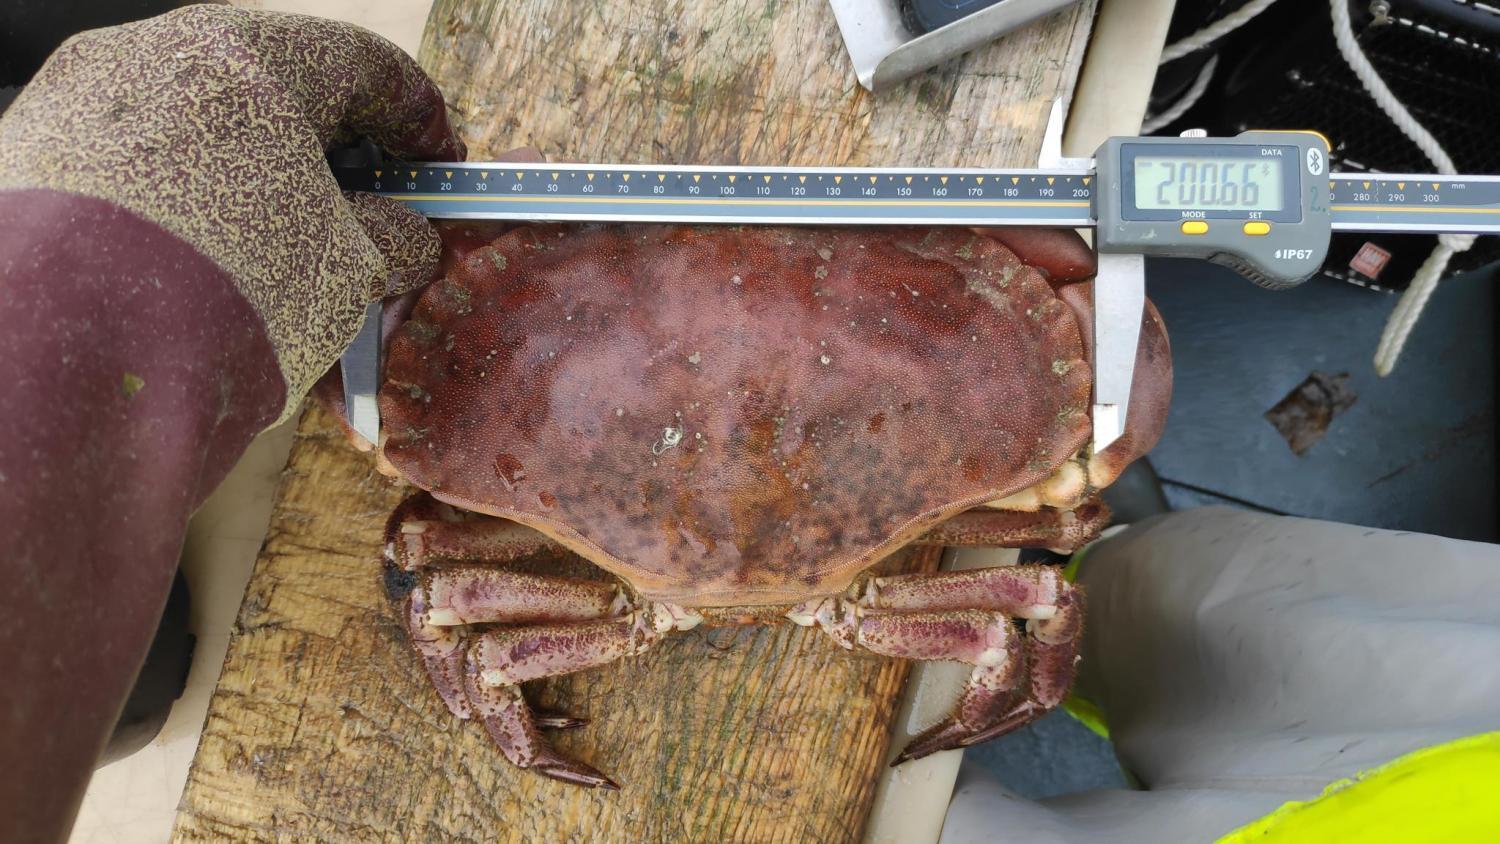 Måling av ryggskjoldbredde med digitalt skyvelære Krabben er et godt eksempel på skallalader kategori 3, hardt skall med noe påvekst og noe slitte tåspisser og mørke flekker.